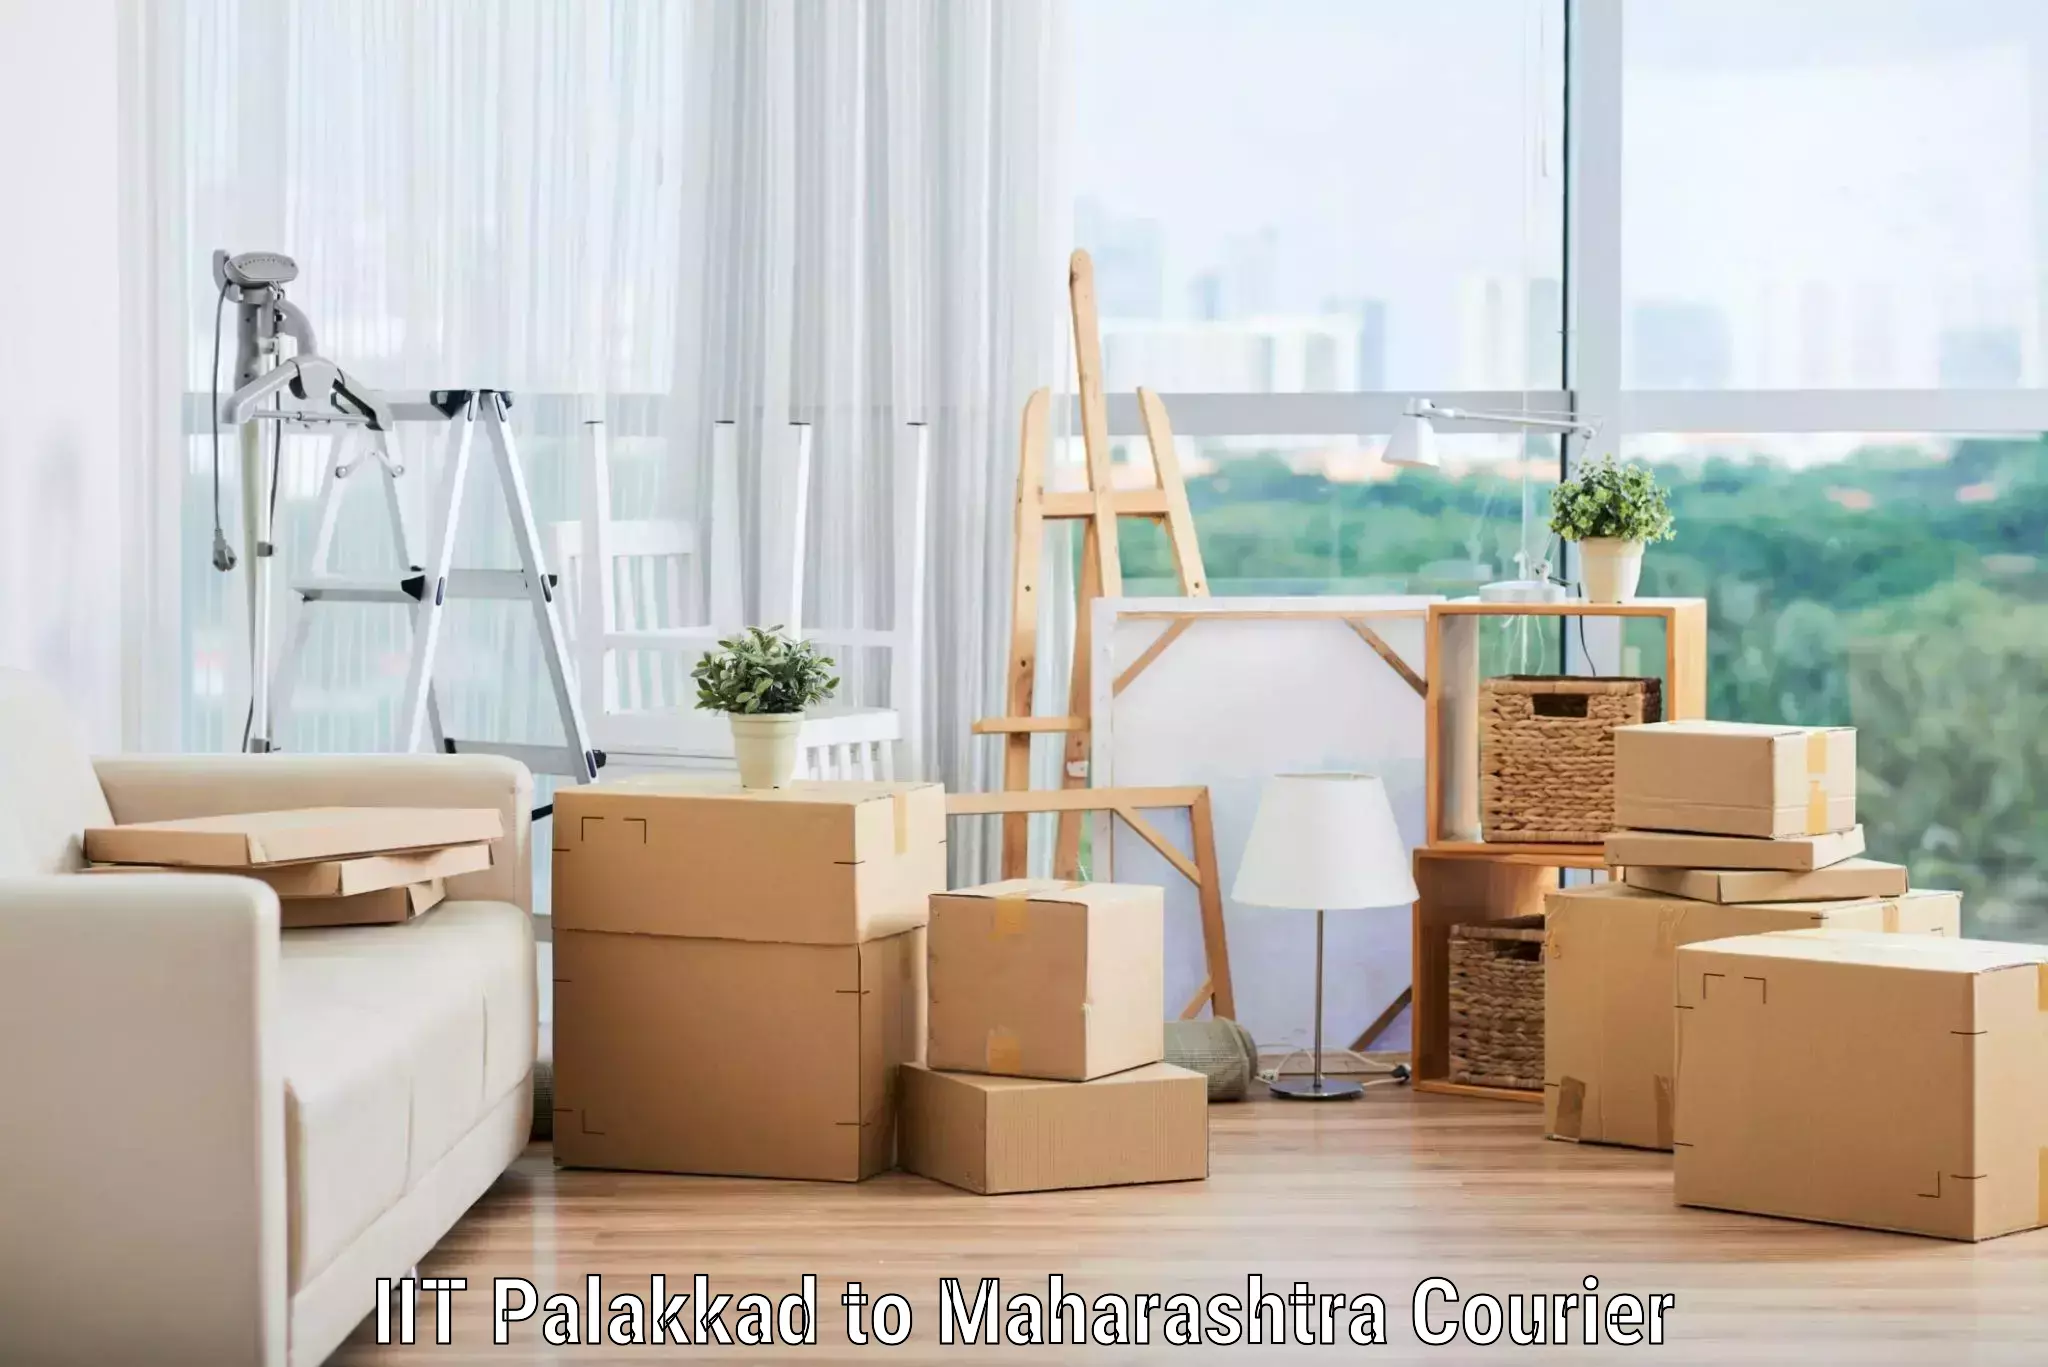 Trusted moving company IIT Palakkad to Maharashtra